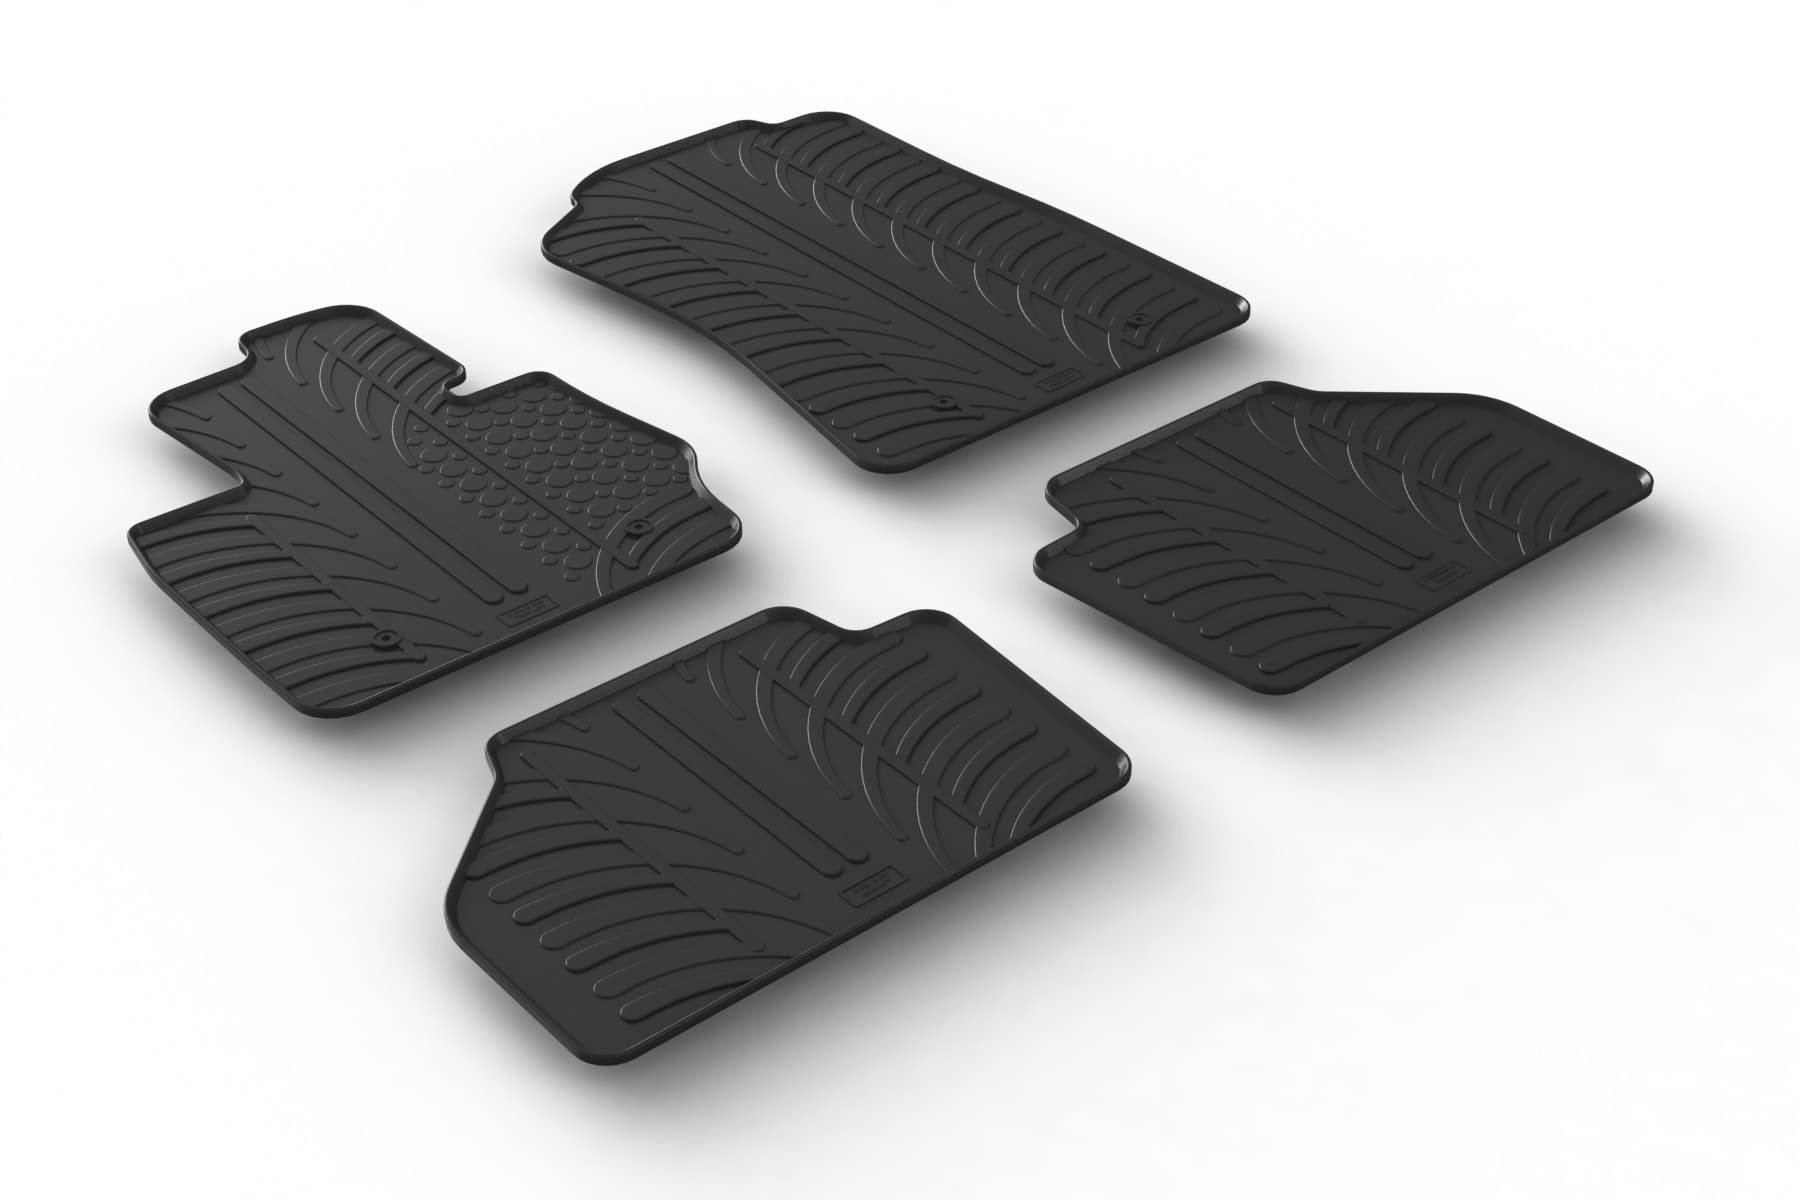 AROBA GL0357 Design Gummi Fußmatten kompatibel mit BMW X3 F25 BJ. 11.2010-09.2017 erhöhter Rand 4 TLG Farbe Schwarz Gummimatten Automatten passgenau